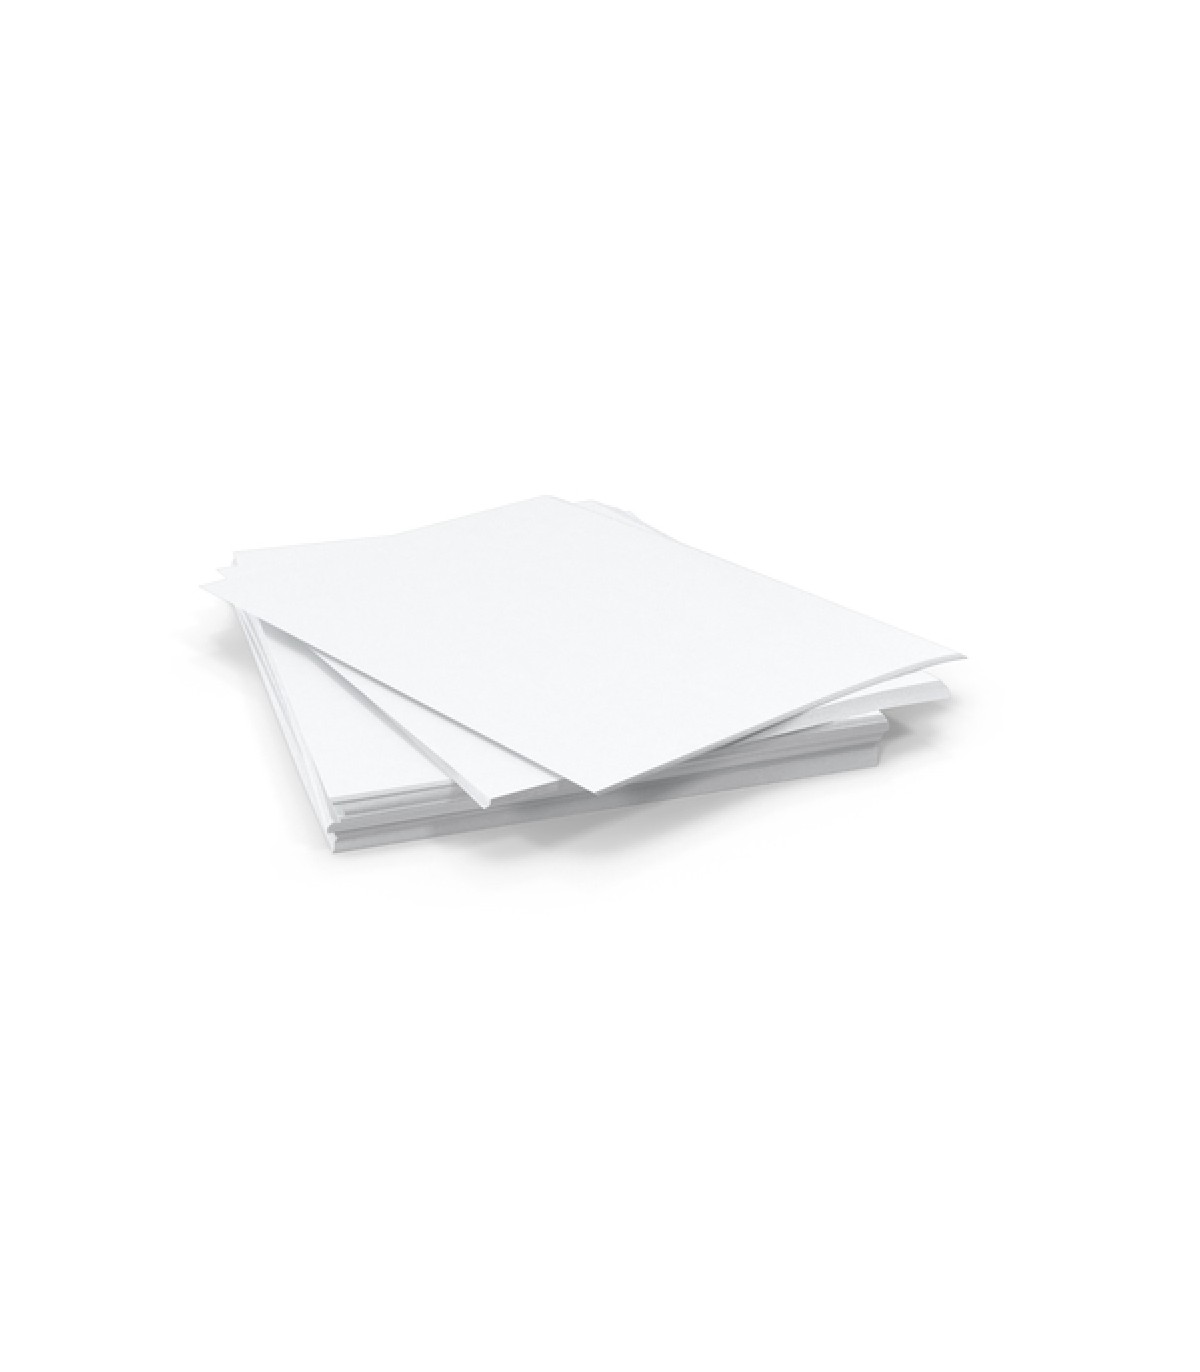 UIOK Papier Décalcomanie Blanc, A4x15 Waterslide Decal Papier